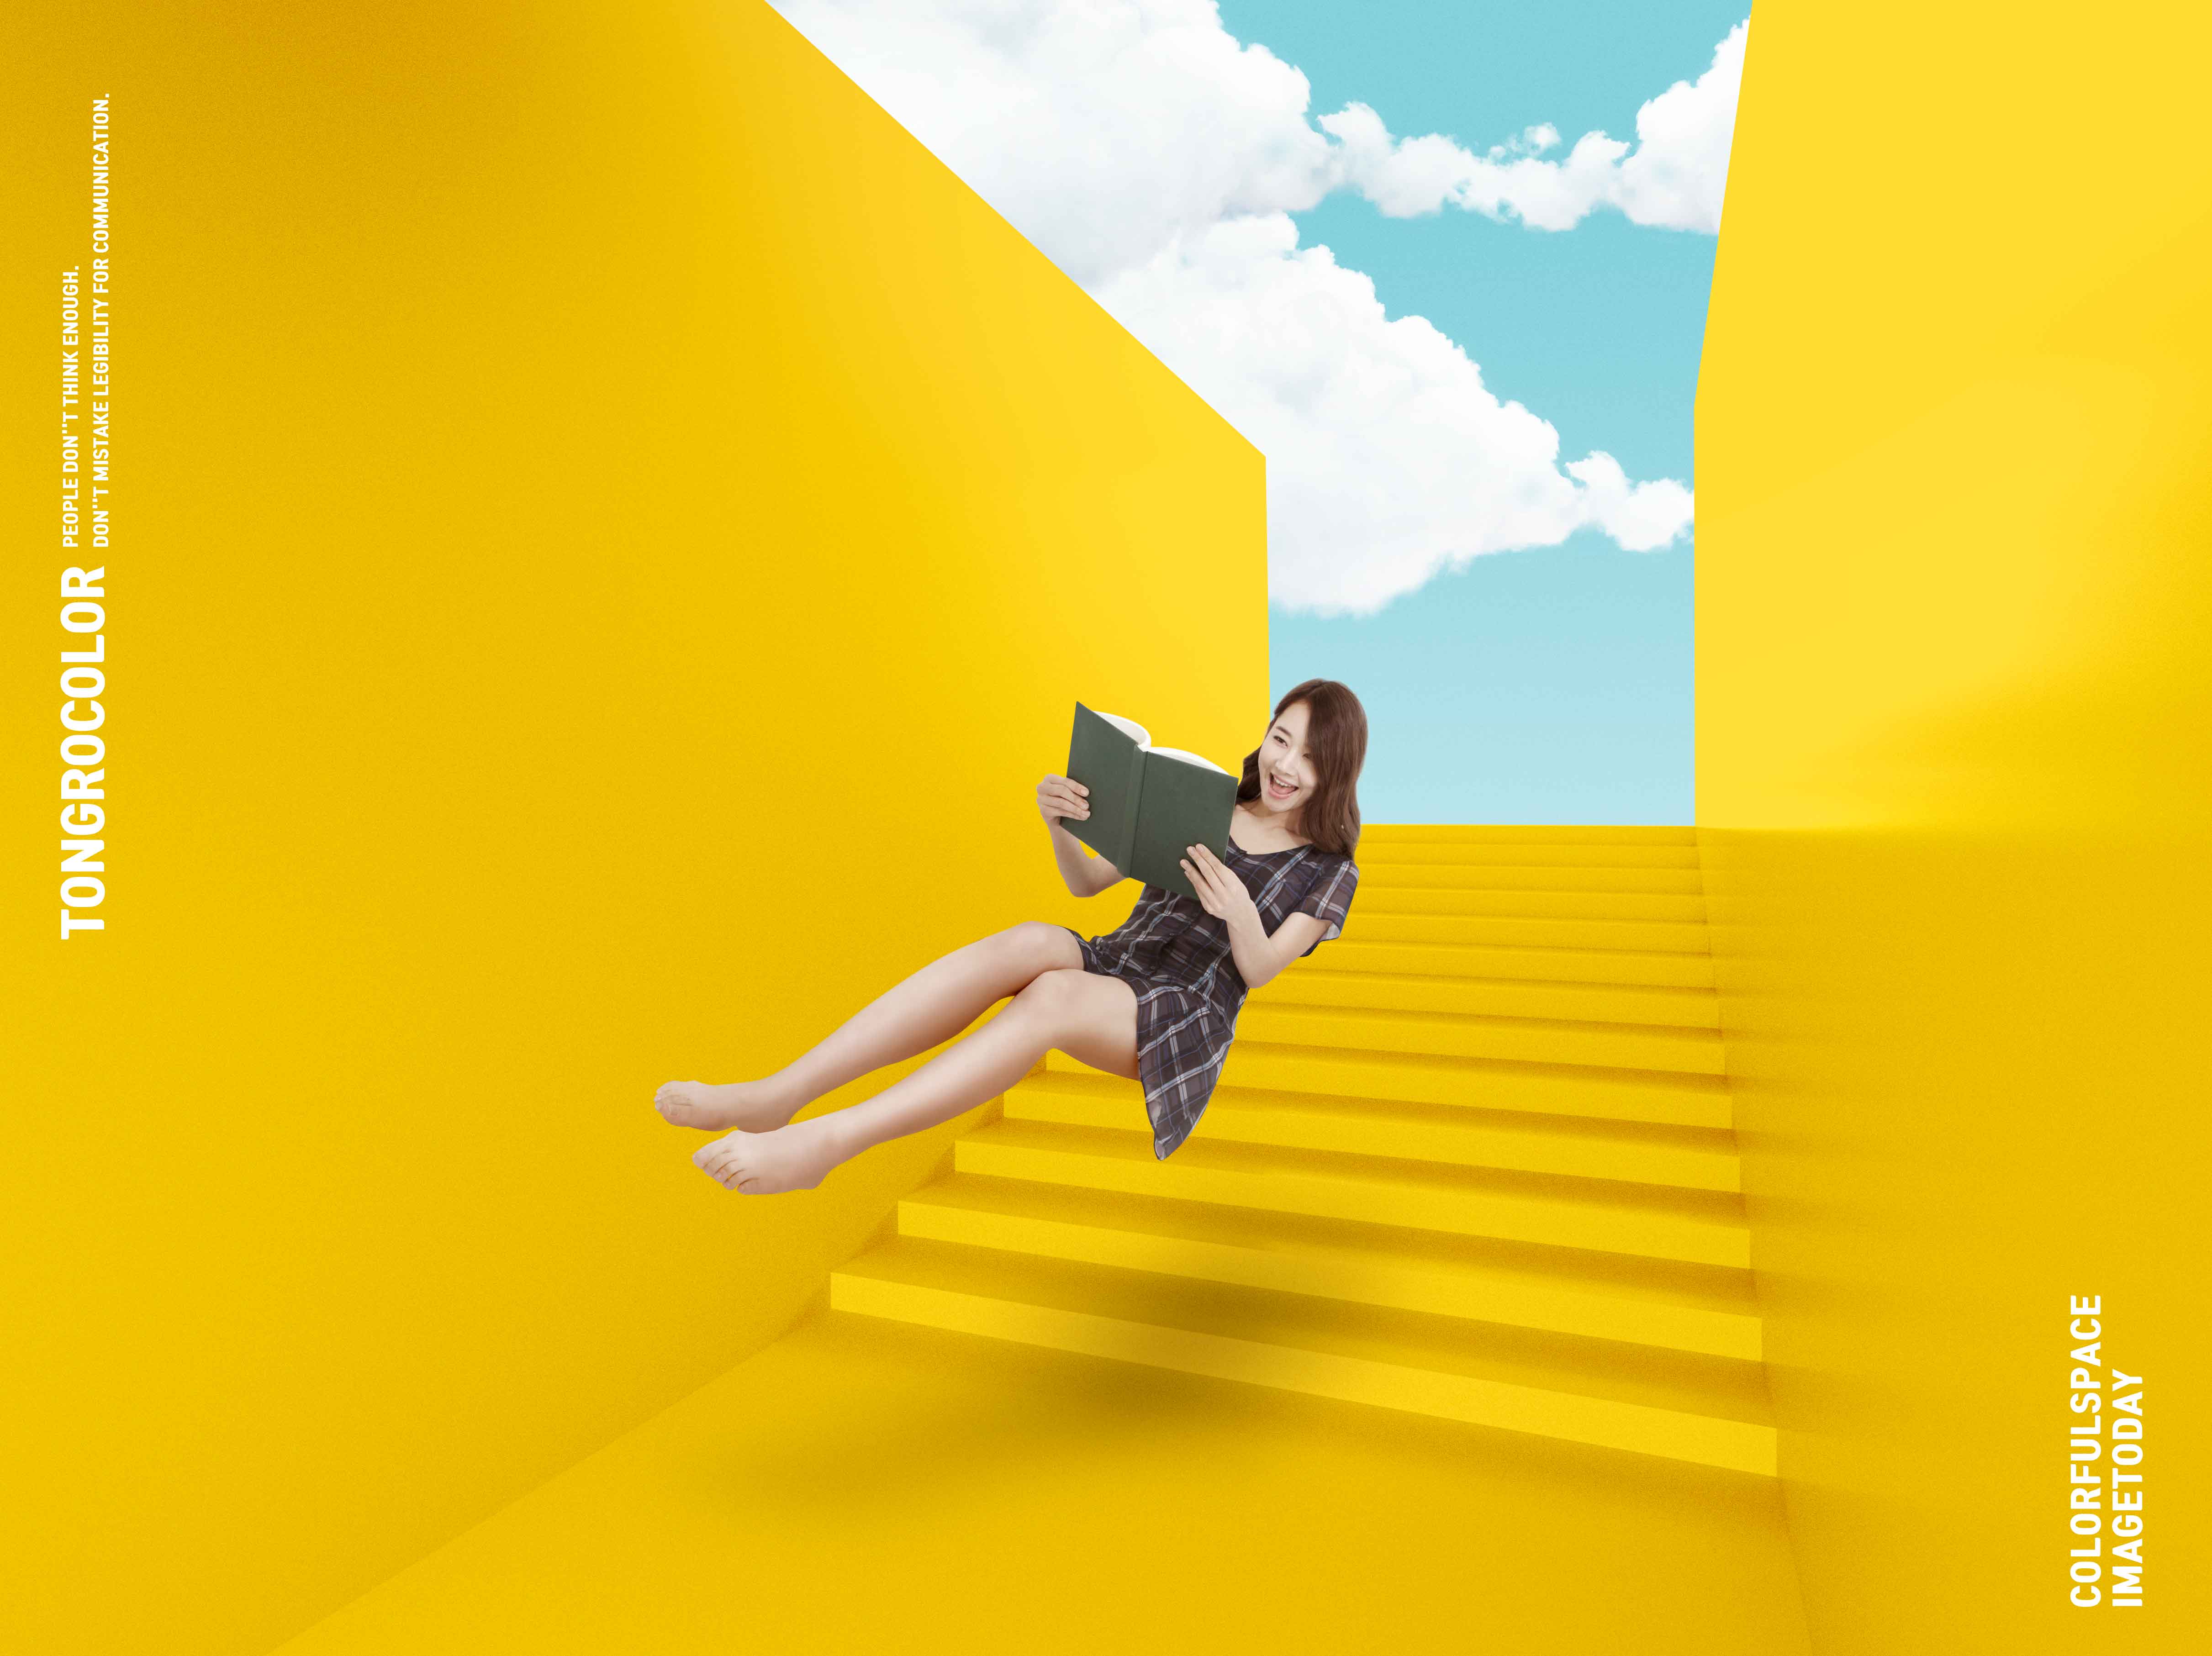 黄色配色抽象楼梯空间海报PSD素材素材库精选psd素材插图